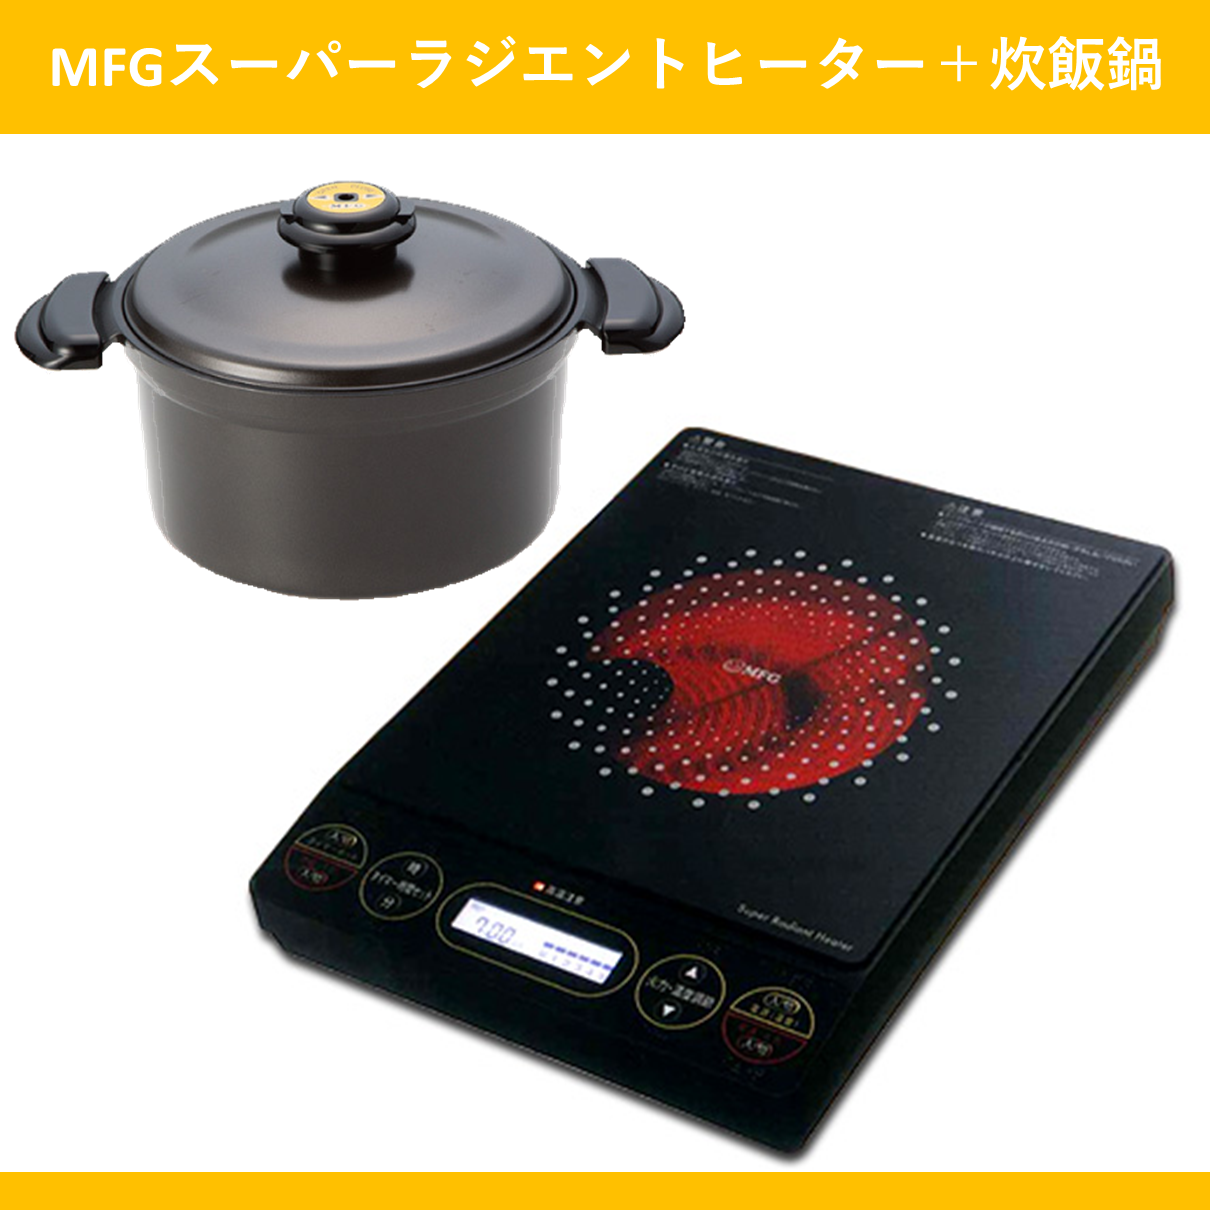 【新品】MFG ラジエントヒーター FG-800 (100V 卓上タイプ)